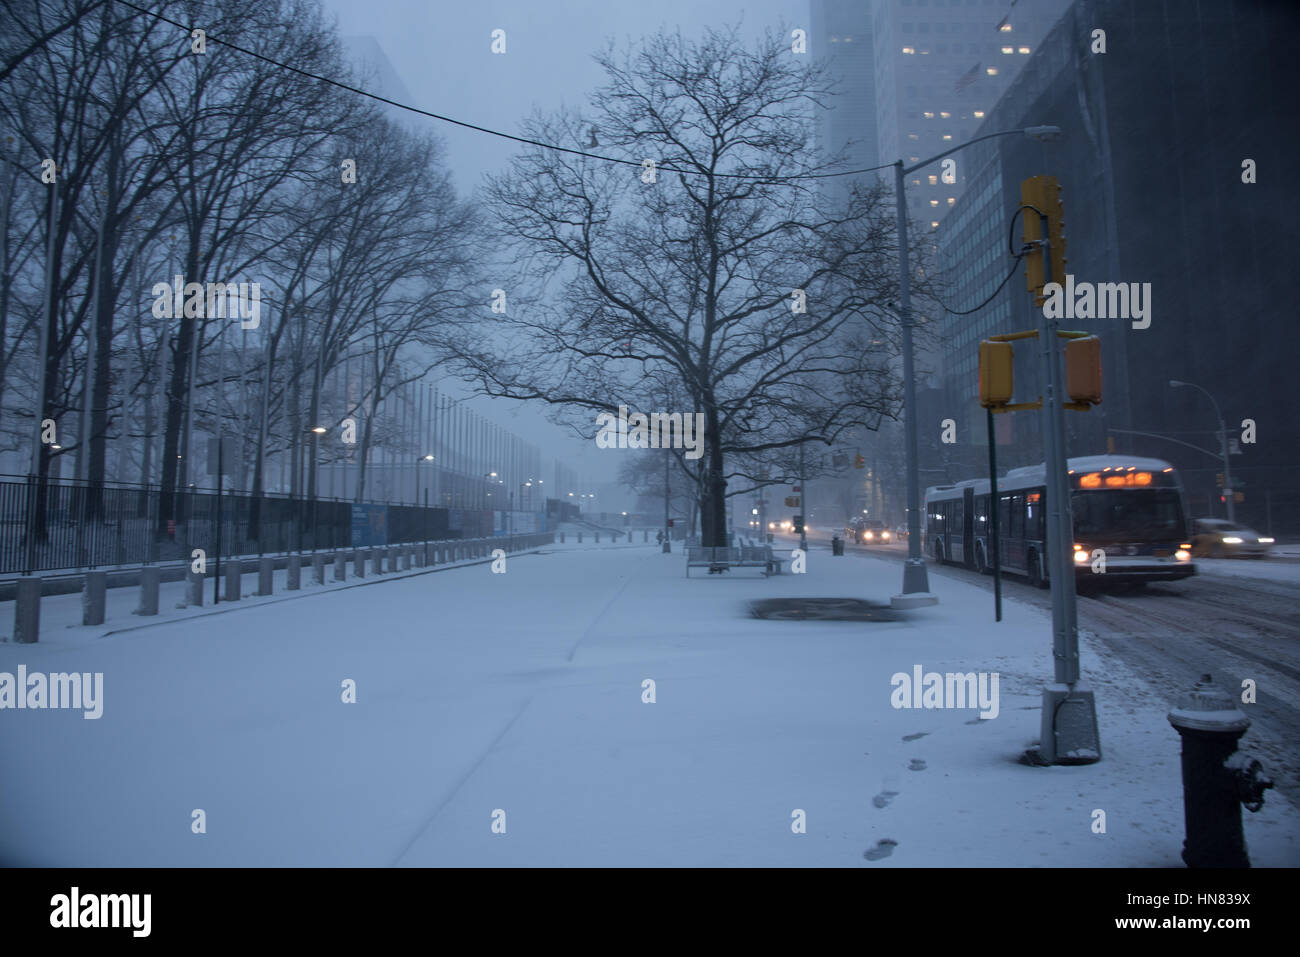 9. Februar 2017 - New York City, New York: Wintersturm Niko trifft New York City. First Avenue bedeckt mit Schnee, vor den Vereinten Nationen Gebäude in Midtown Manhattan. Stockfoto